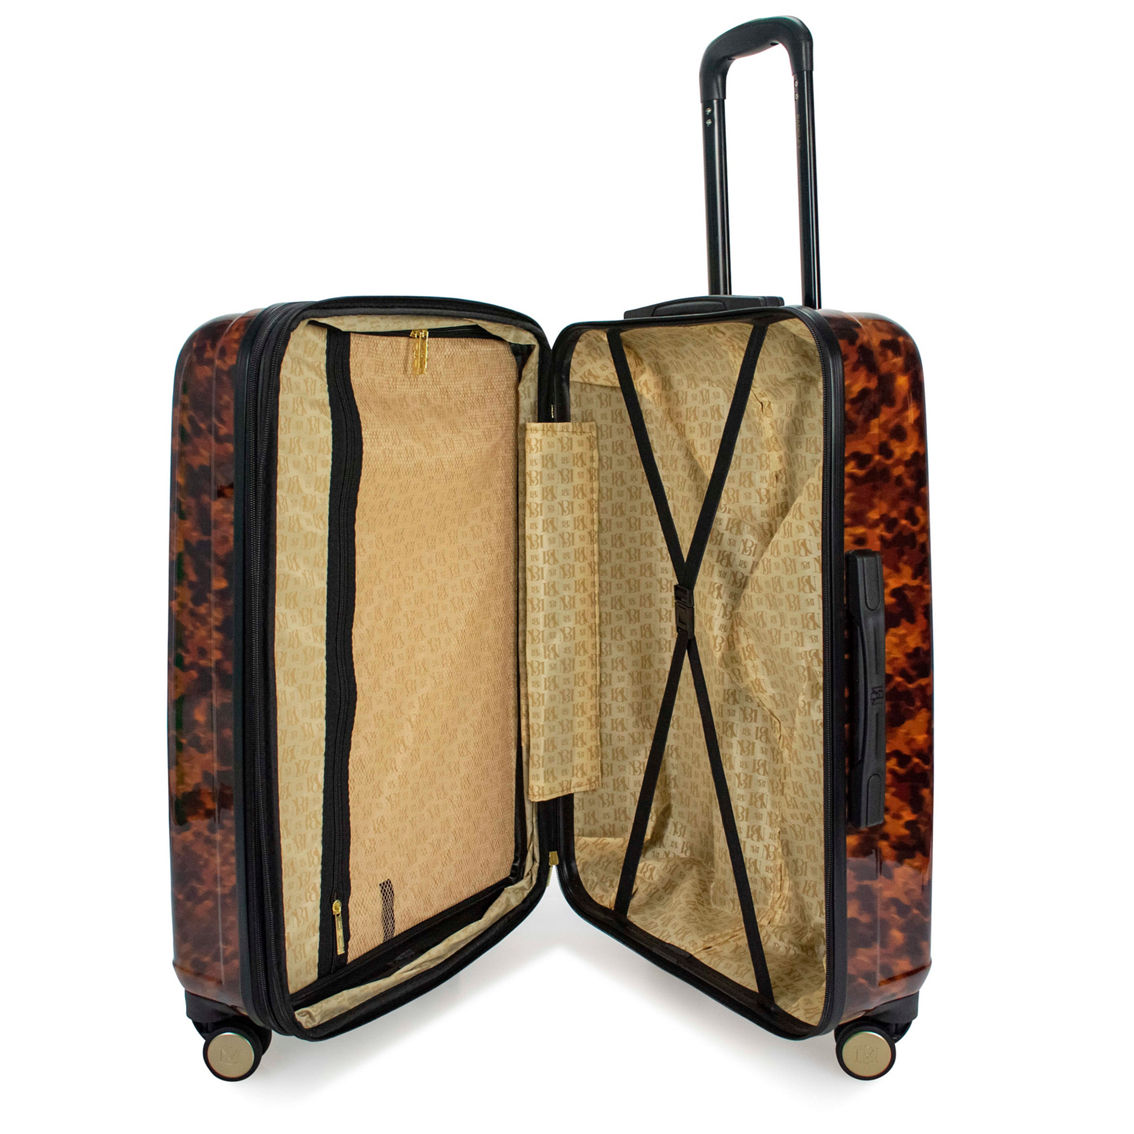 BADGLEY MISCHKA Tortoise 3 Piece Expandable Luggage Set - Image 2 of 5